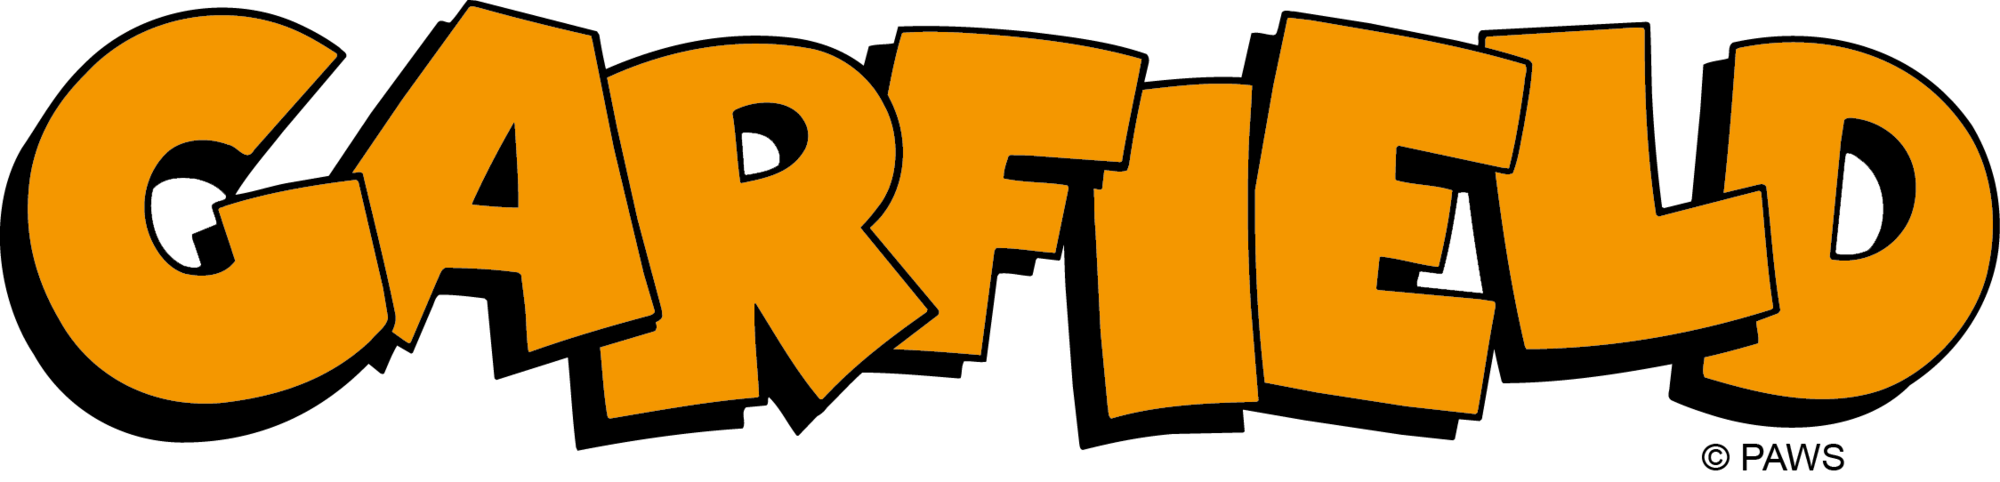 Garfield Logo - Garfield (comic strip) | Logopedia | FANDOM powered by Wikia